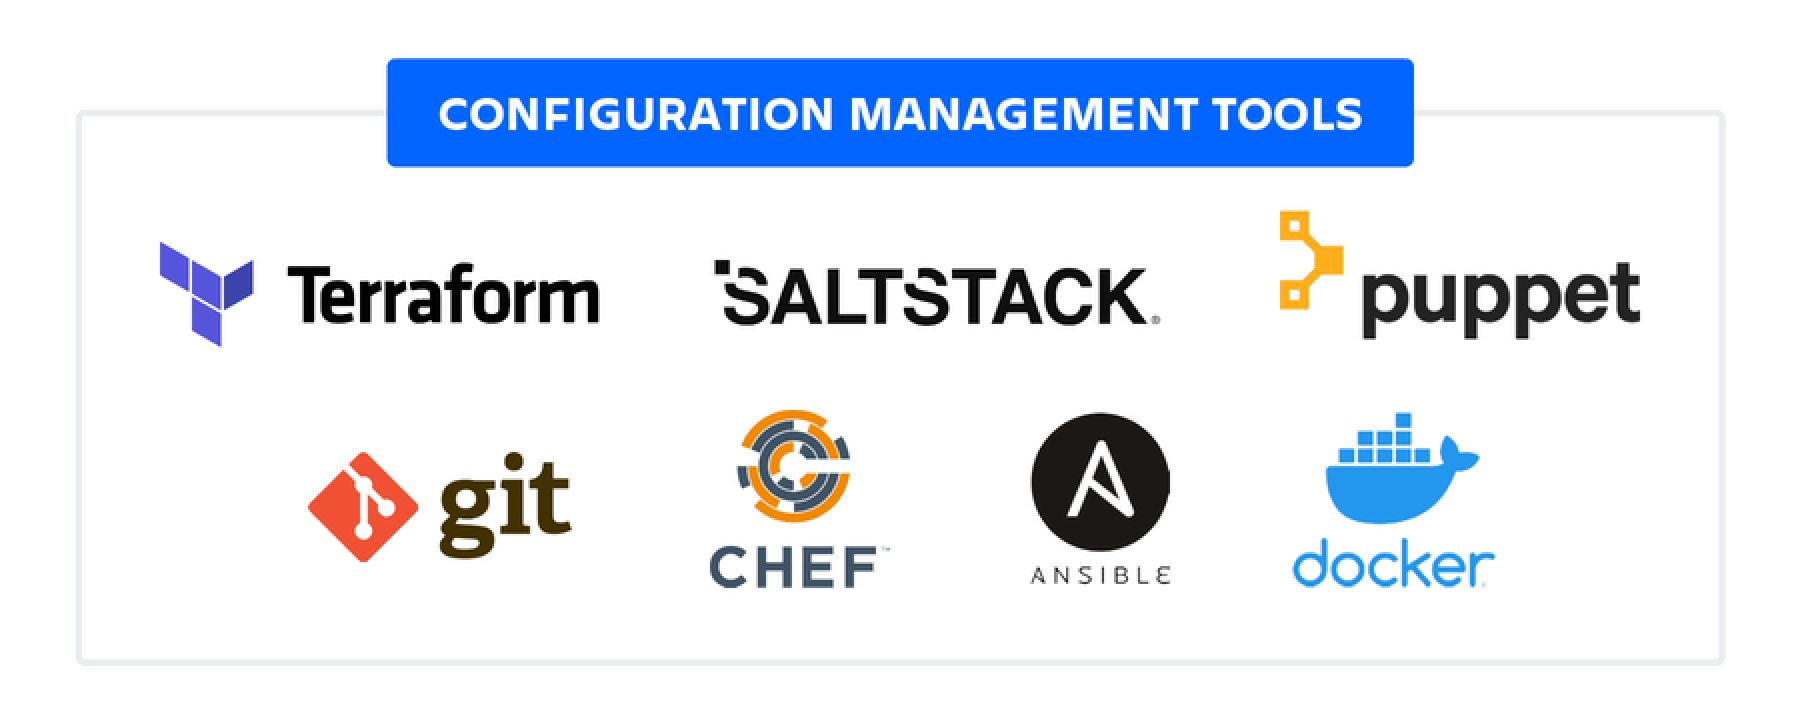 構成管理ツール: Terraform、Saltstack、Puppet、Git、Chef、Ansible、Docker